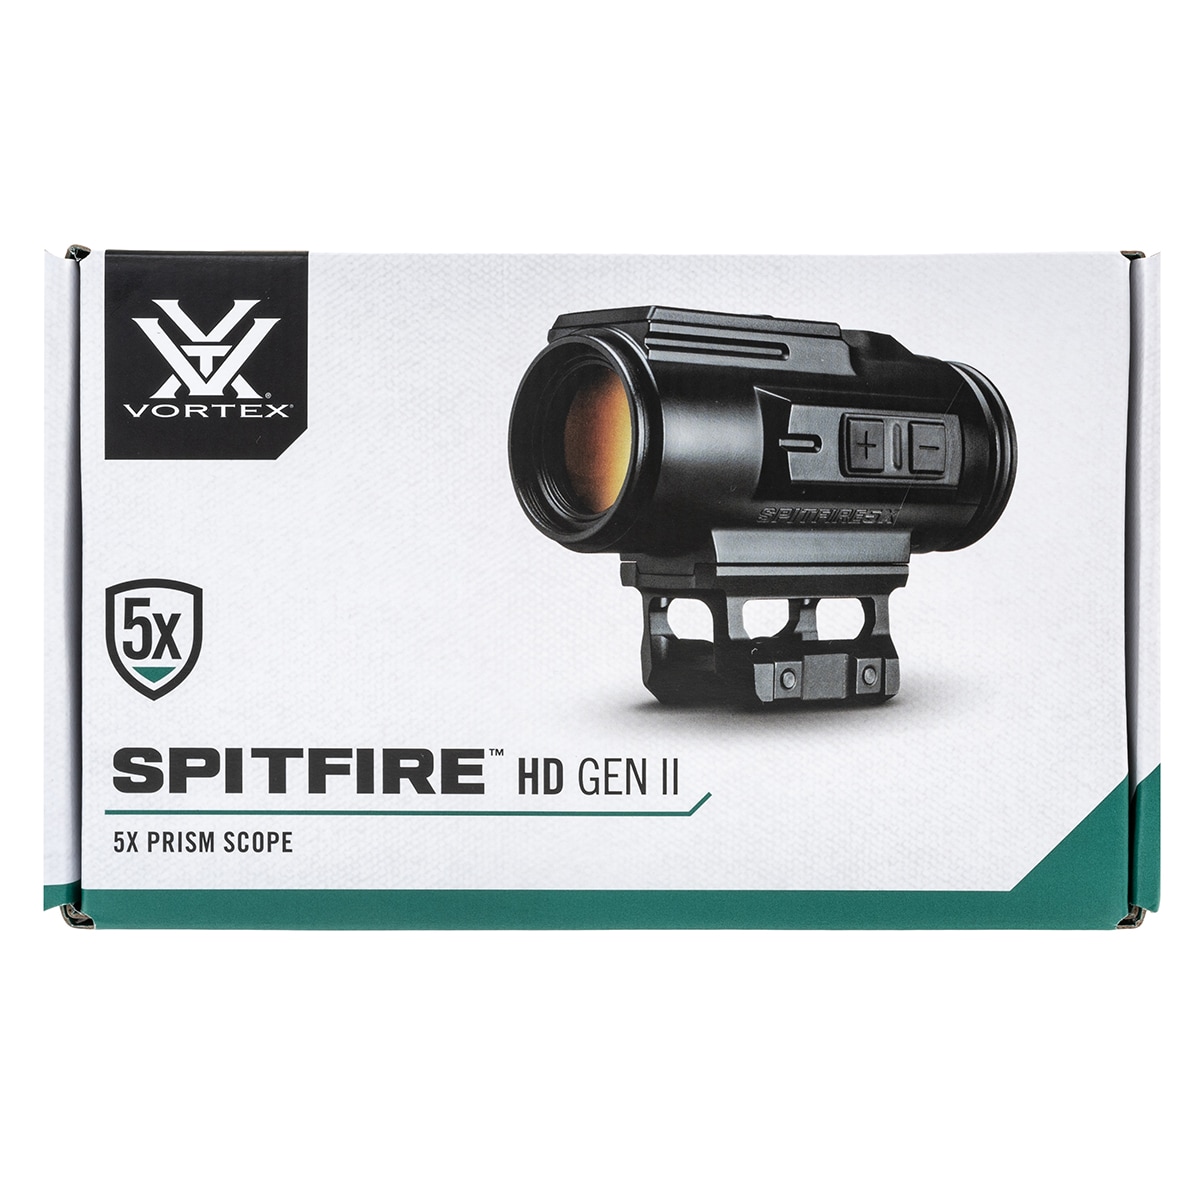 Призматичний приціл Vortex Spitfire 5x Prism Scope HD Gen.II